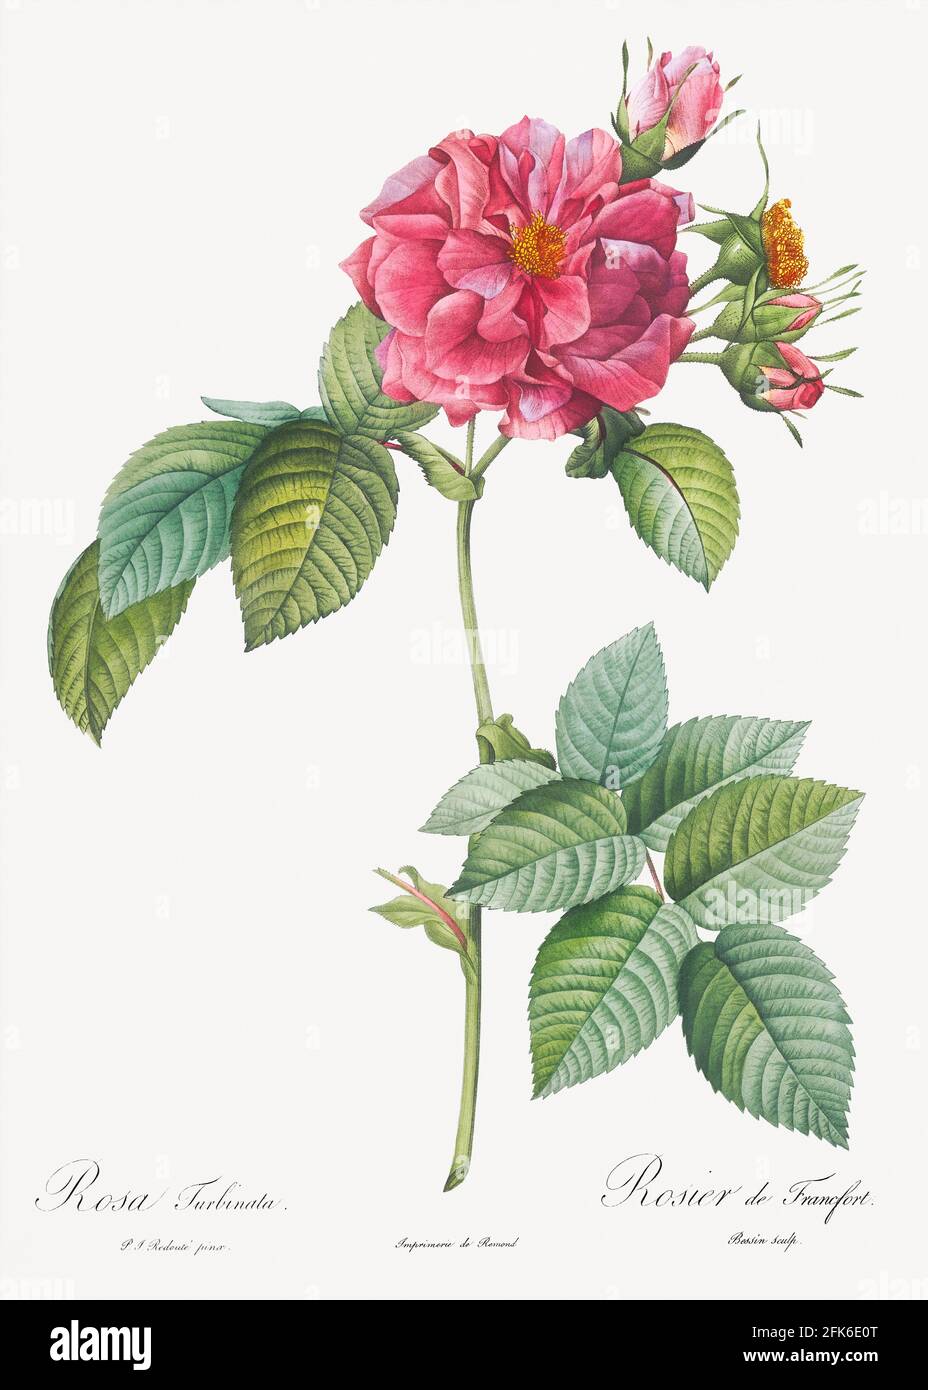 Rosa turbinata, également connue sous le nom de Rose de Francfort des Roses (1817&ndash;1824) par Pierre-Joseph Redoté. Original de la Bibliothèque du Congrès. Digi Banque D'Images